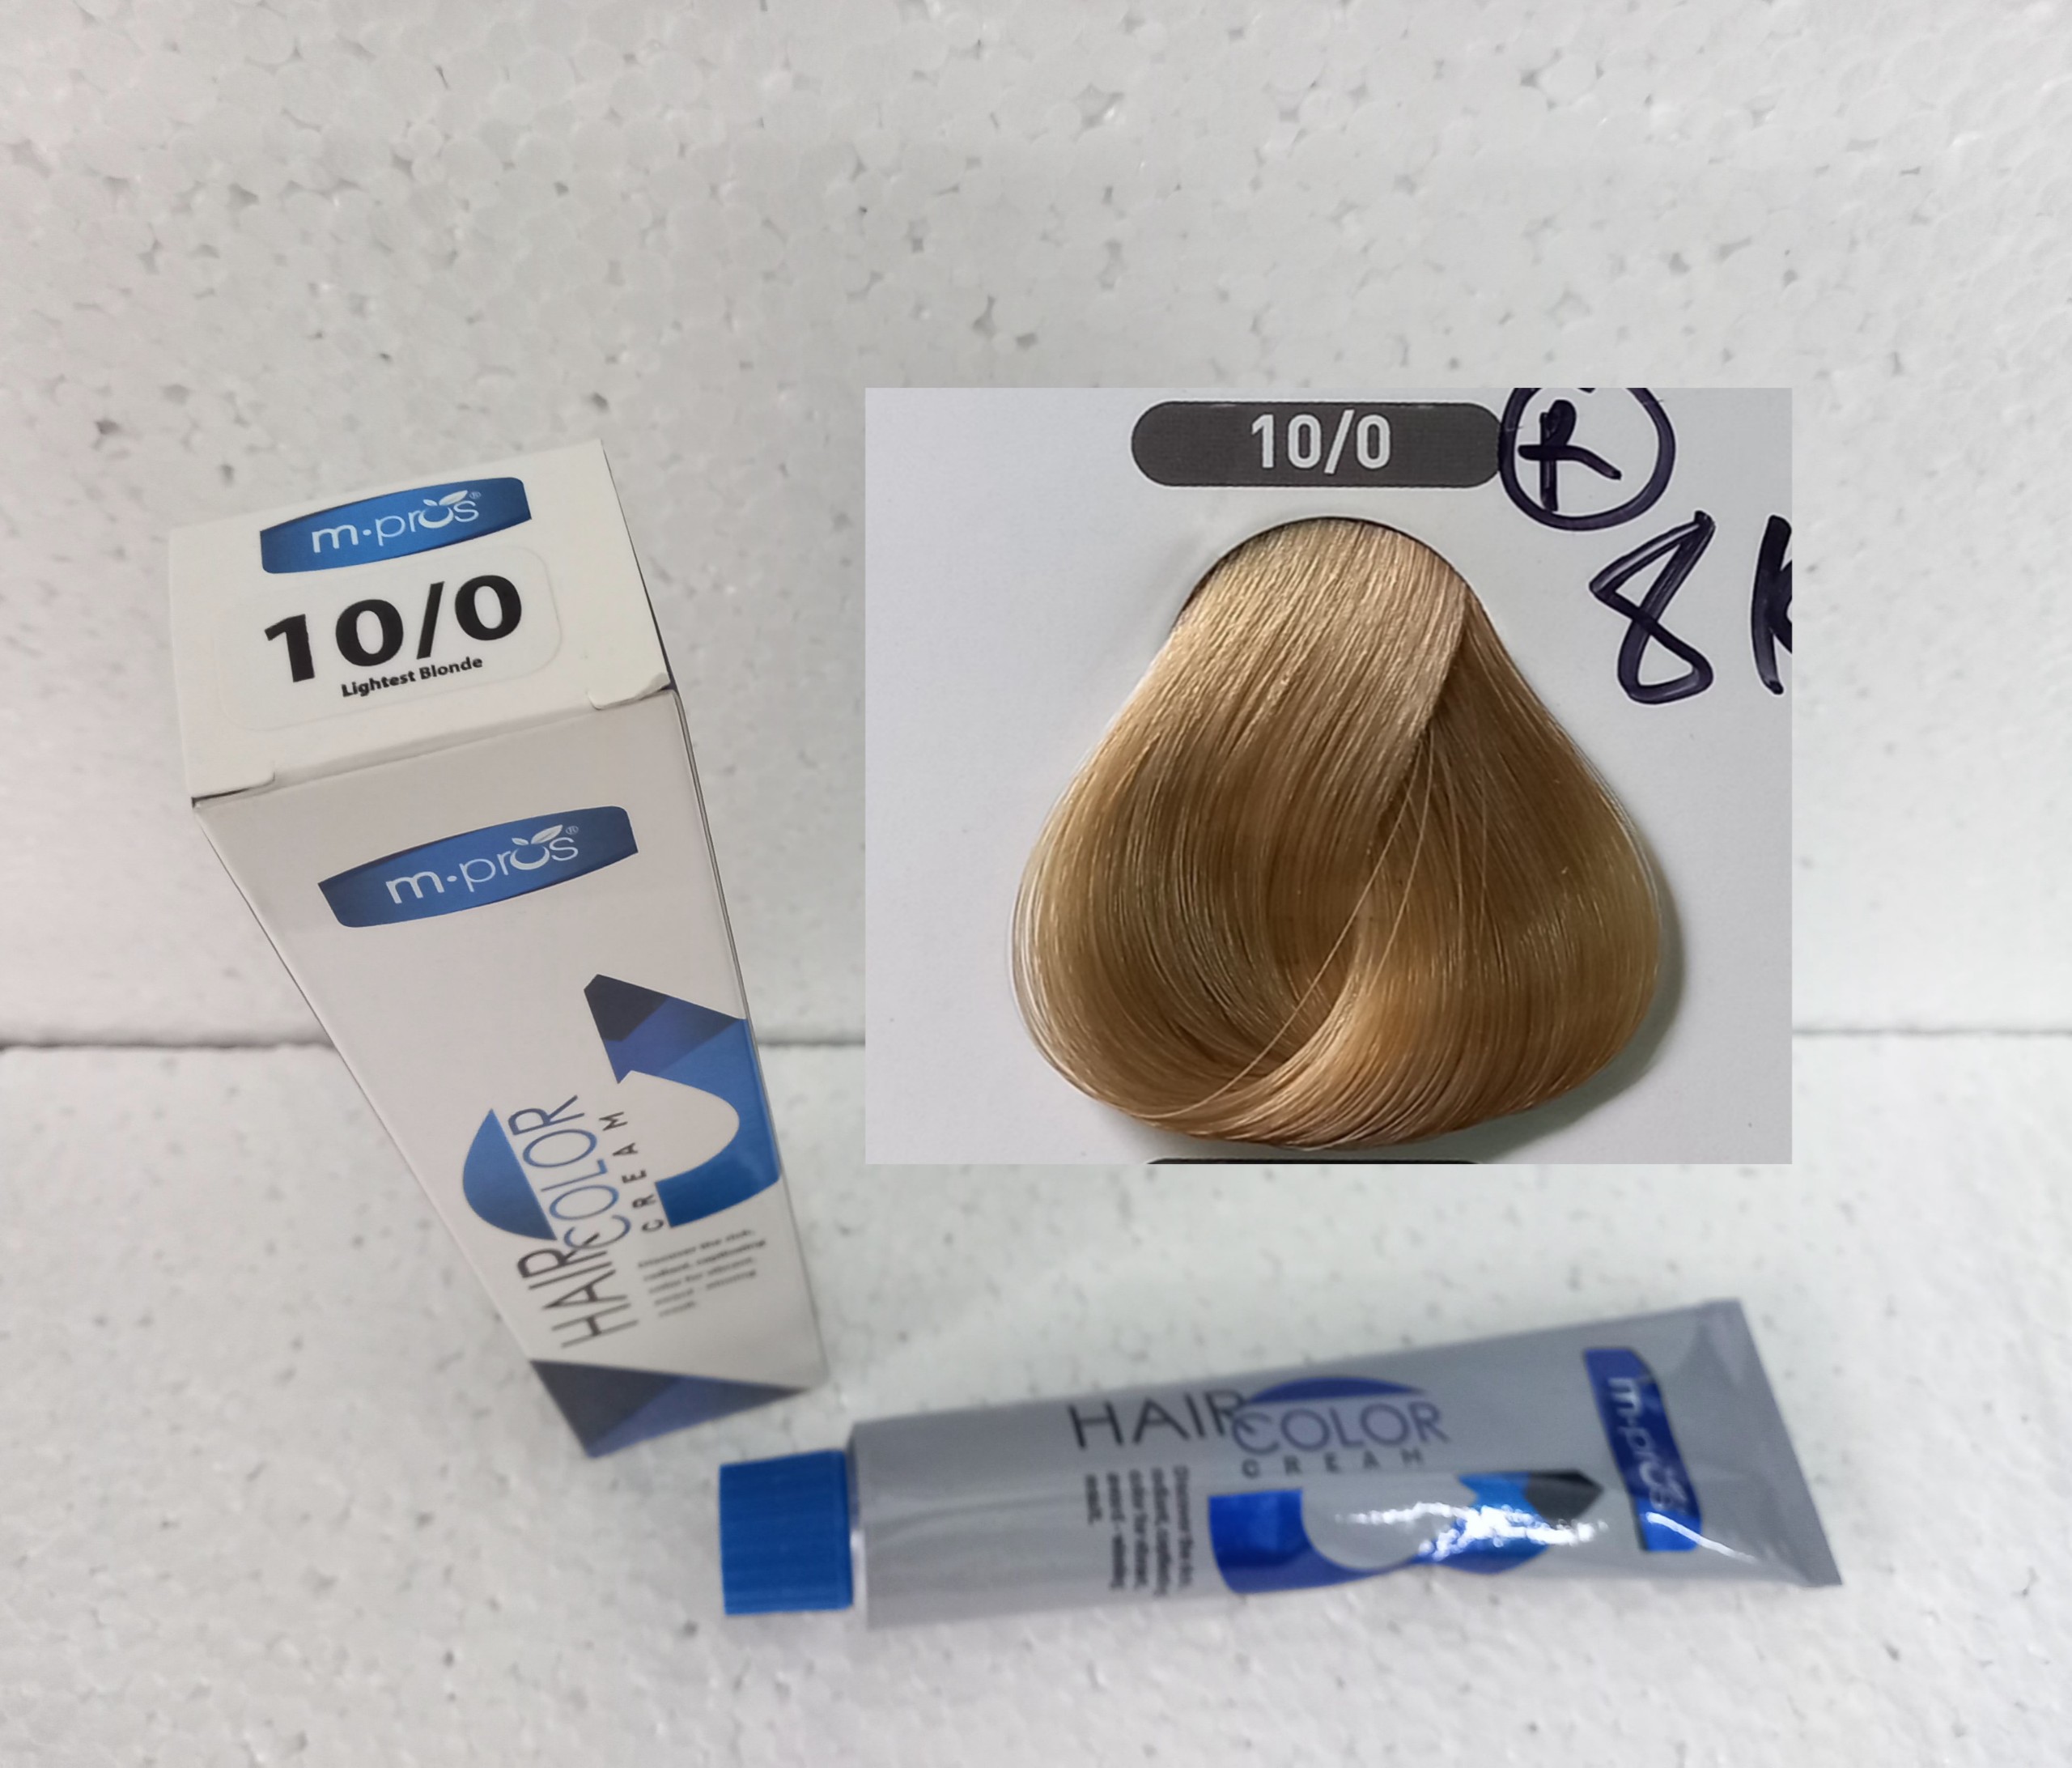 Lavox Natural: Hãy trao cho mái tóc của bạn sự chăm sóc đầy tự nhiên với Lavox Natural - một sản phẩm nhuộm tóc chuyên nghiệp với thành phần 100% từ thiên nhiên. Không chỉ giúp nhuộm tóc một cách an toàn mà còn nuôi dưỡng và bảo vệ tóc của bạn từng sợi.